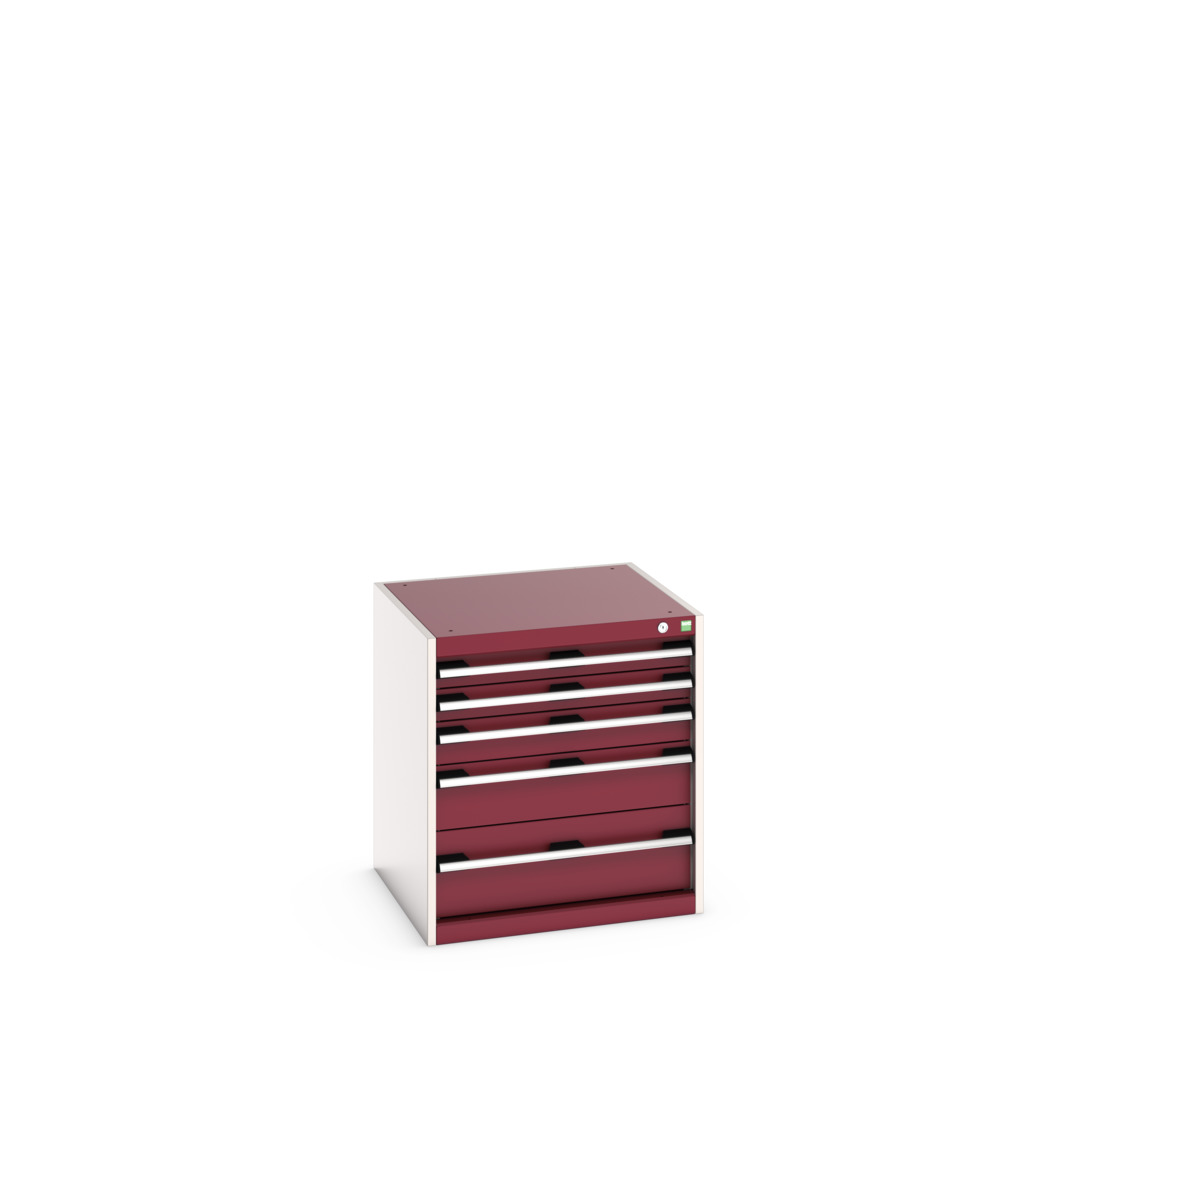 40019027.24V - cubio drawer cabinet